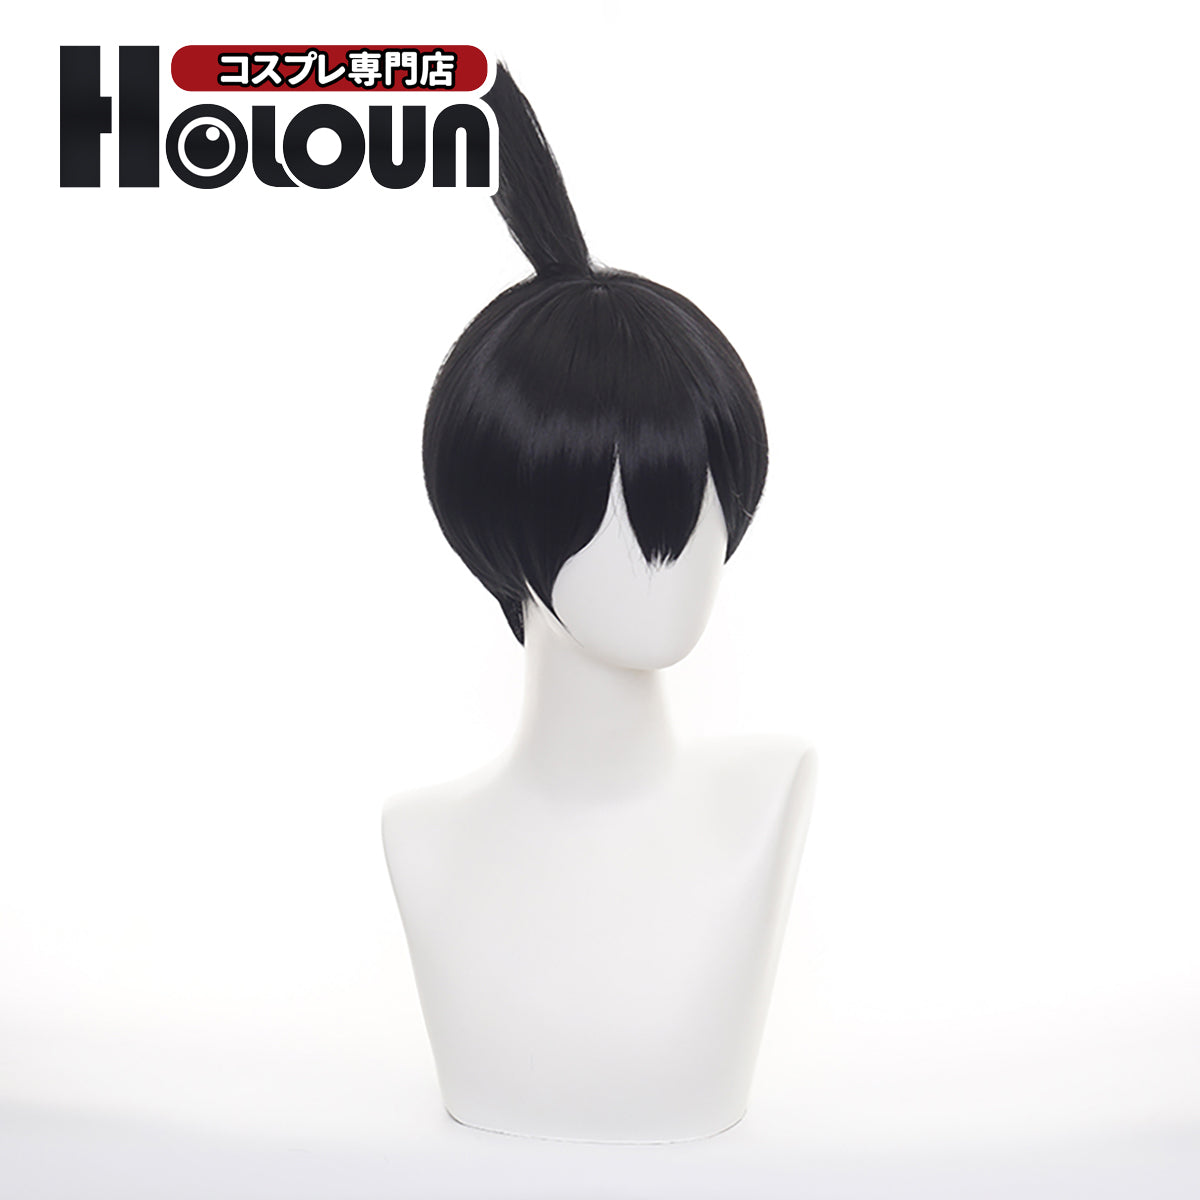 HOLOUN Anime Cosplay Universal Wig For Chainsaw Aki Hayakawa Fake Hair Halloween Christmas Party Gift New